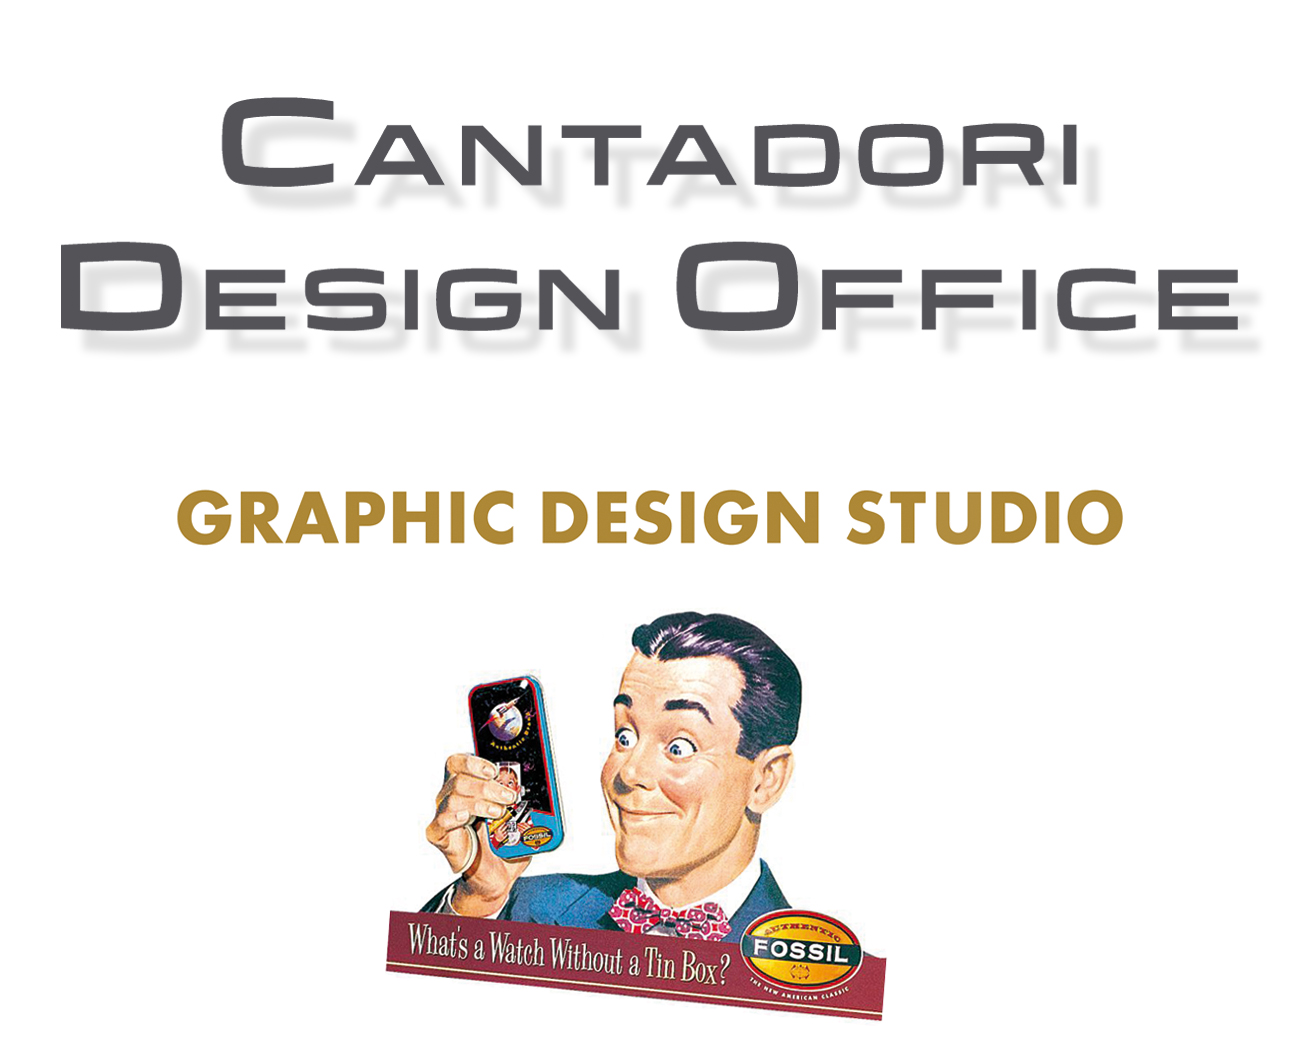 Cantadori Design Office